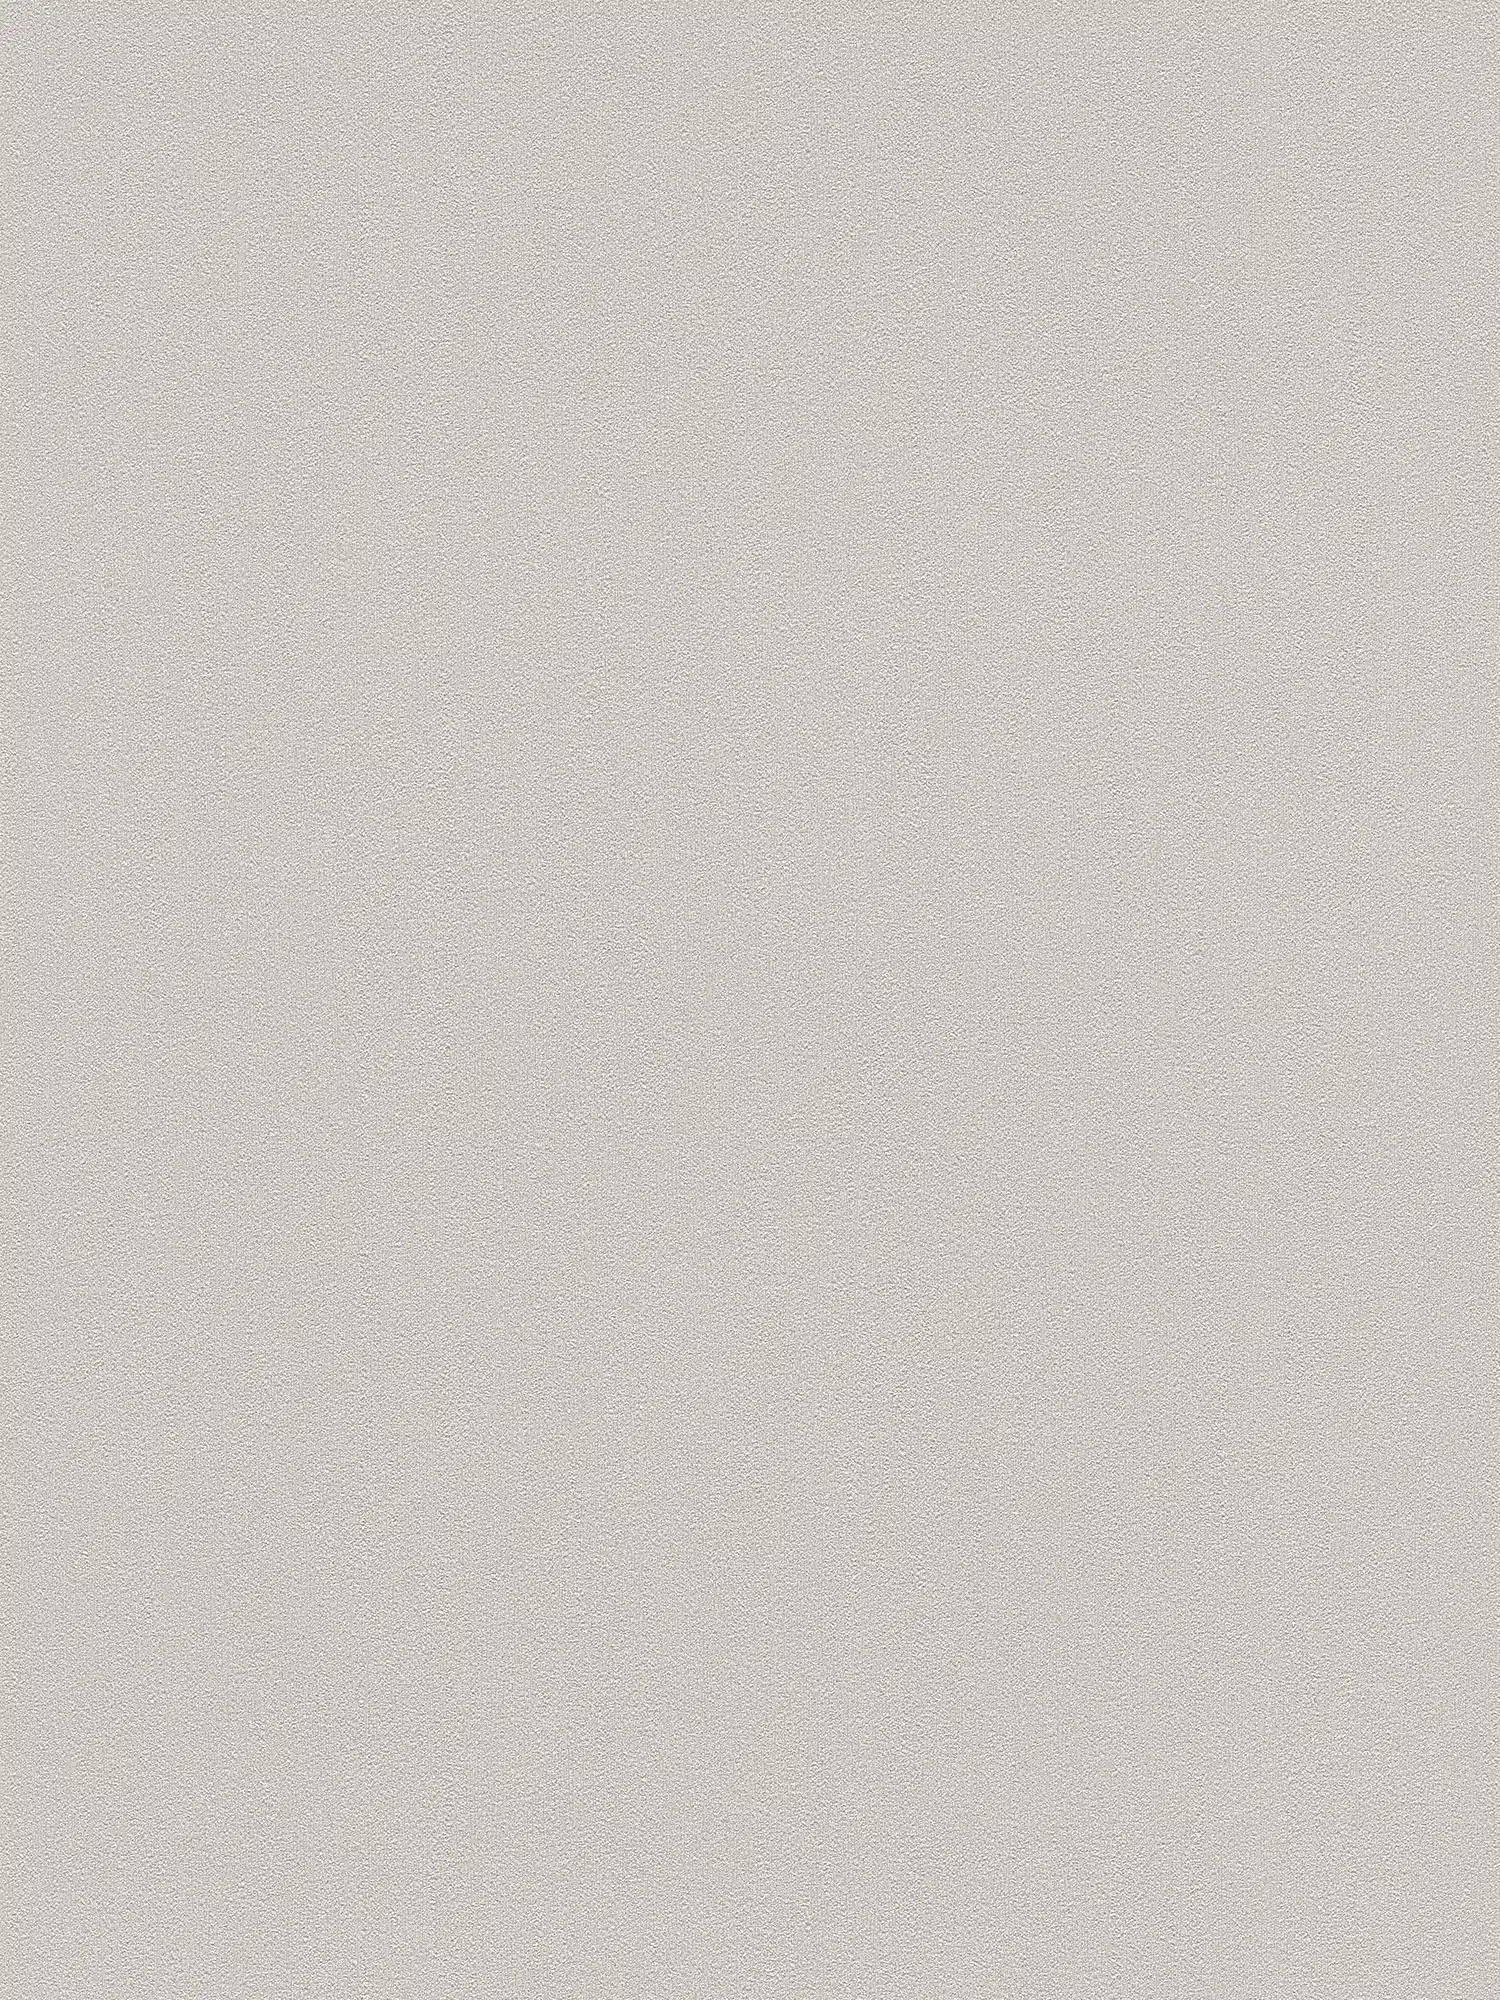 Papier peint Karl LAGERFELD Monochrome & texture gaufrée - Gris
